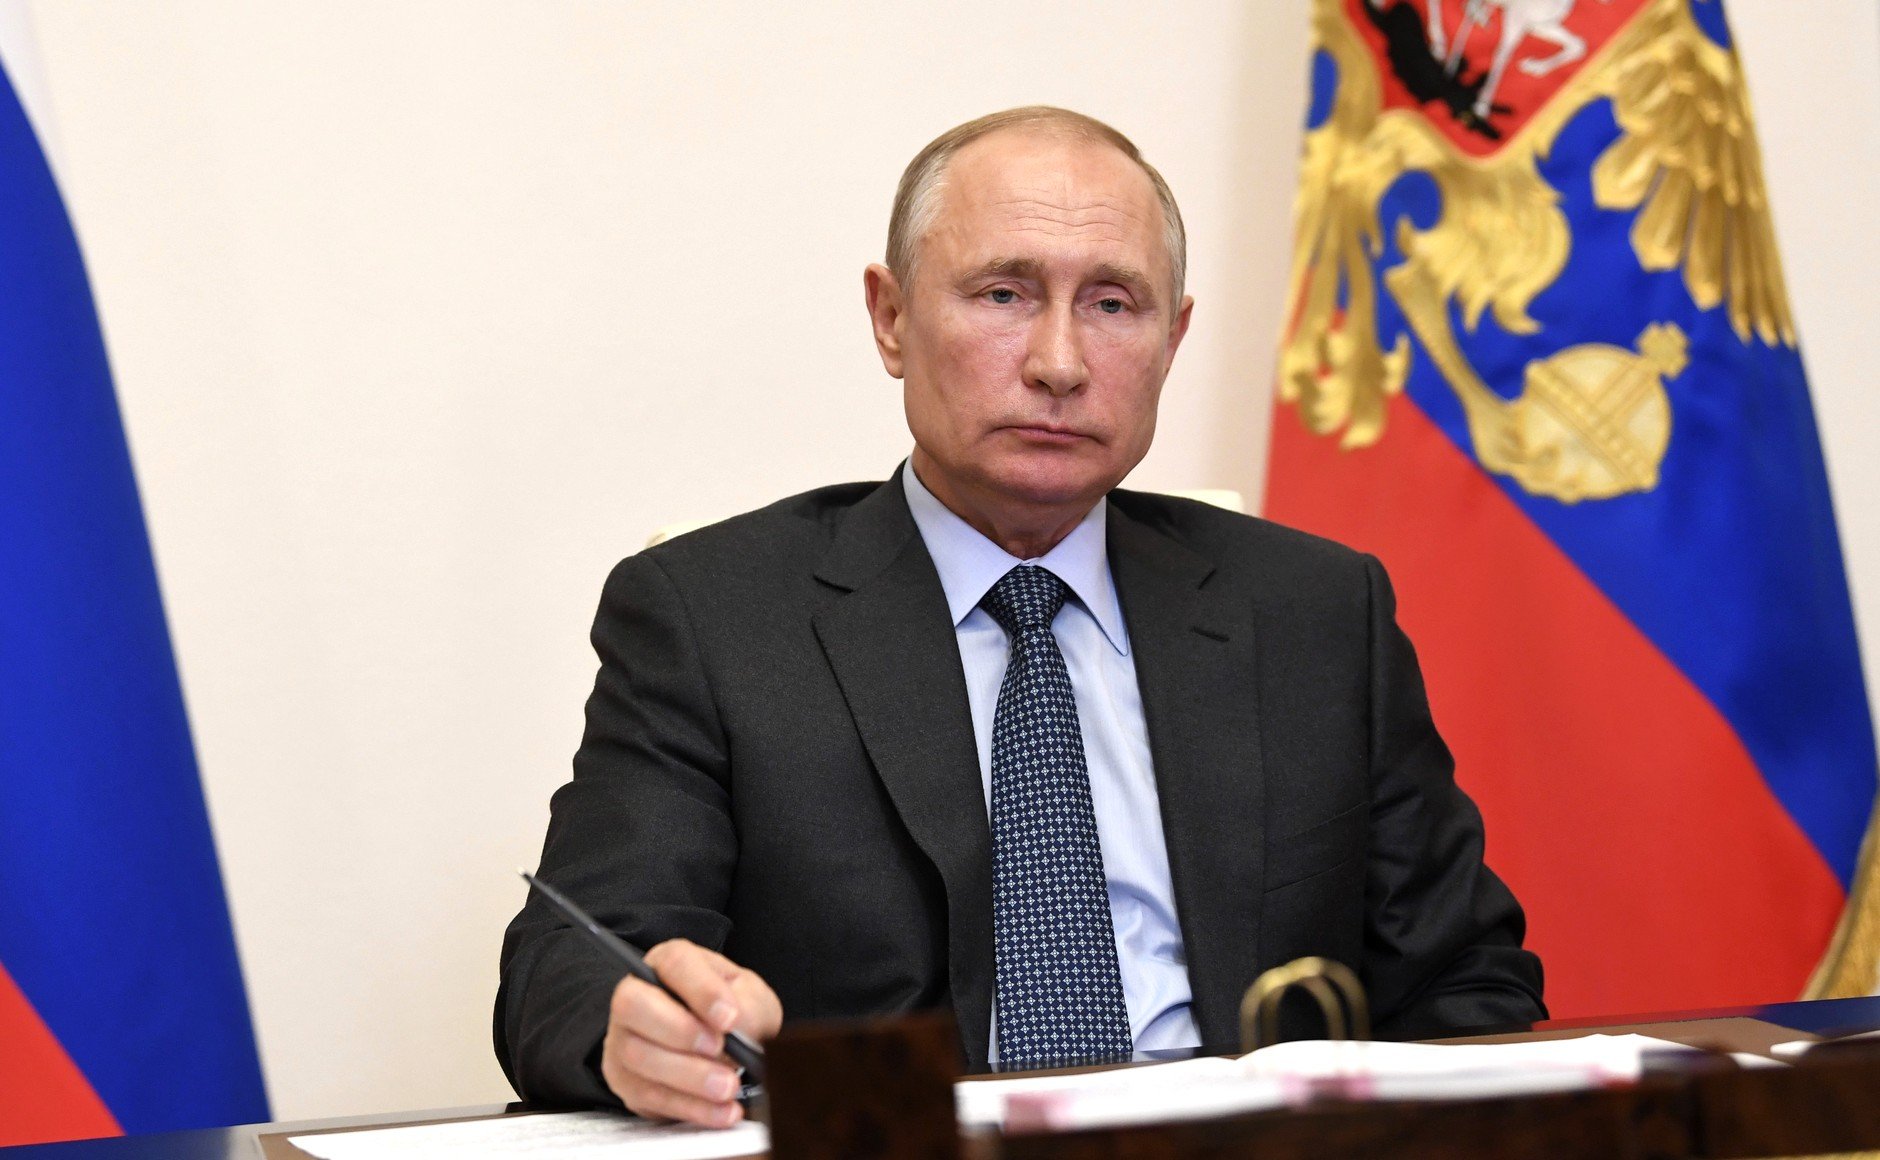 Путин поддержал участие Минниханова в выборах главы Татарстана (видео)